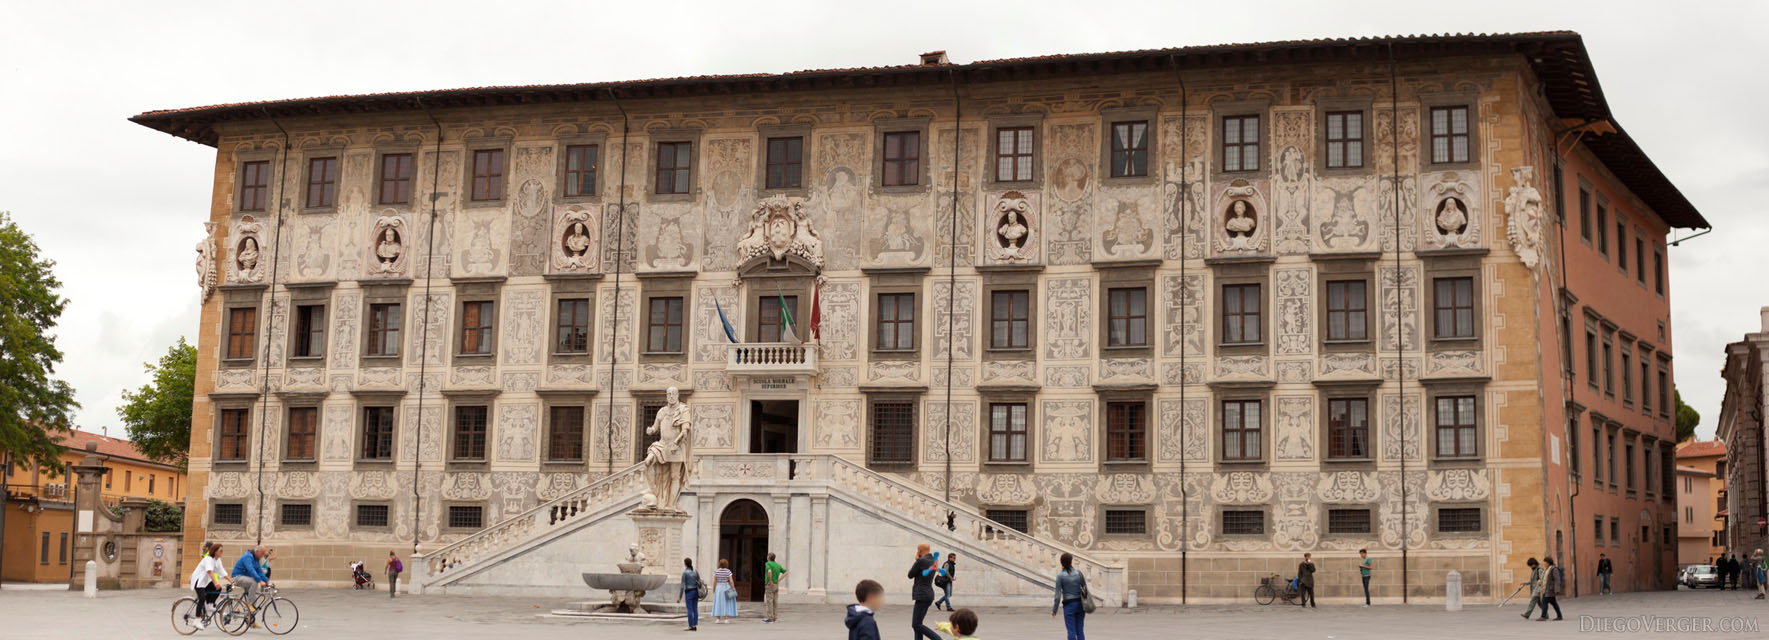 Foto panorámica del edificio de la Scuola Normale Superiore de Pisa - Pisa, Italia